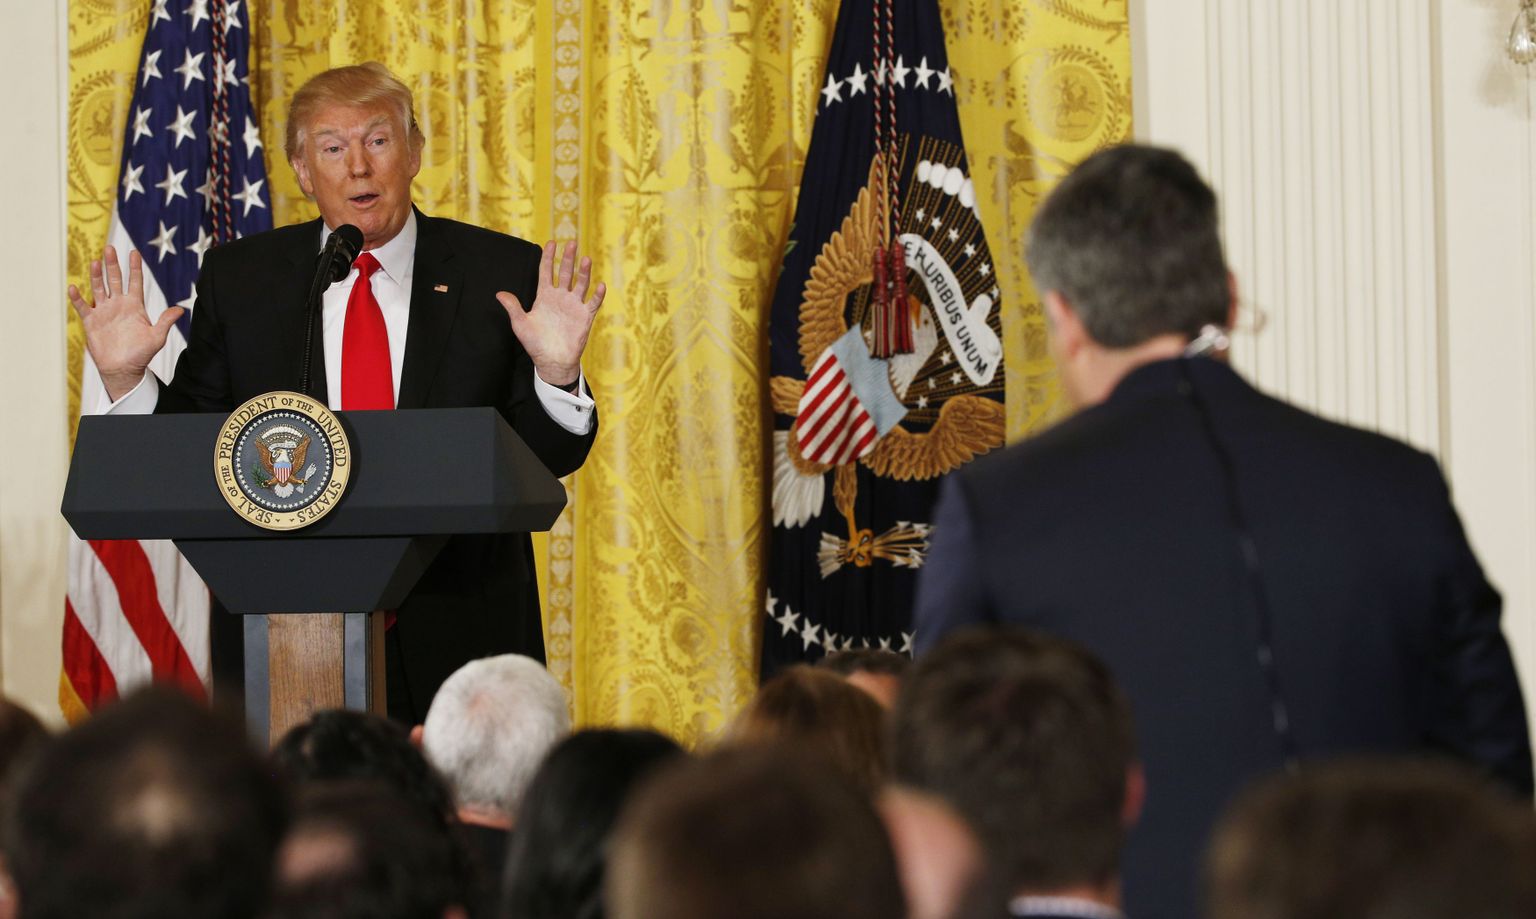 USA president Donald Trump vastamas CNNi reporteri Jim Acosta küsimusele 16. veebruaril Valges Majas toimunud pressikonverentsil. Eile otsustas Trump CNNi ukse taha jätta.